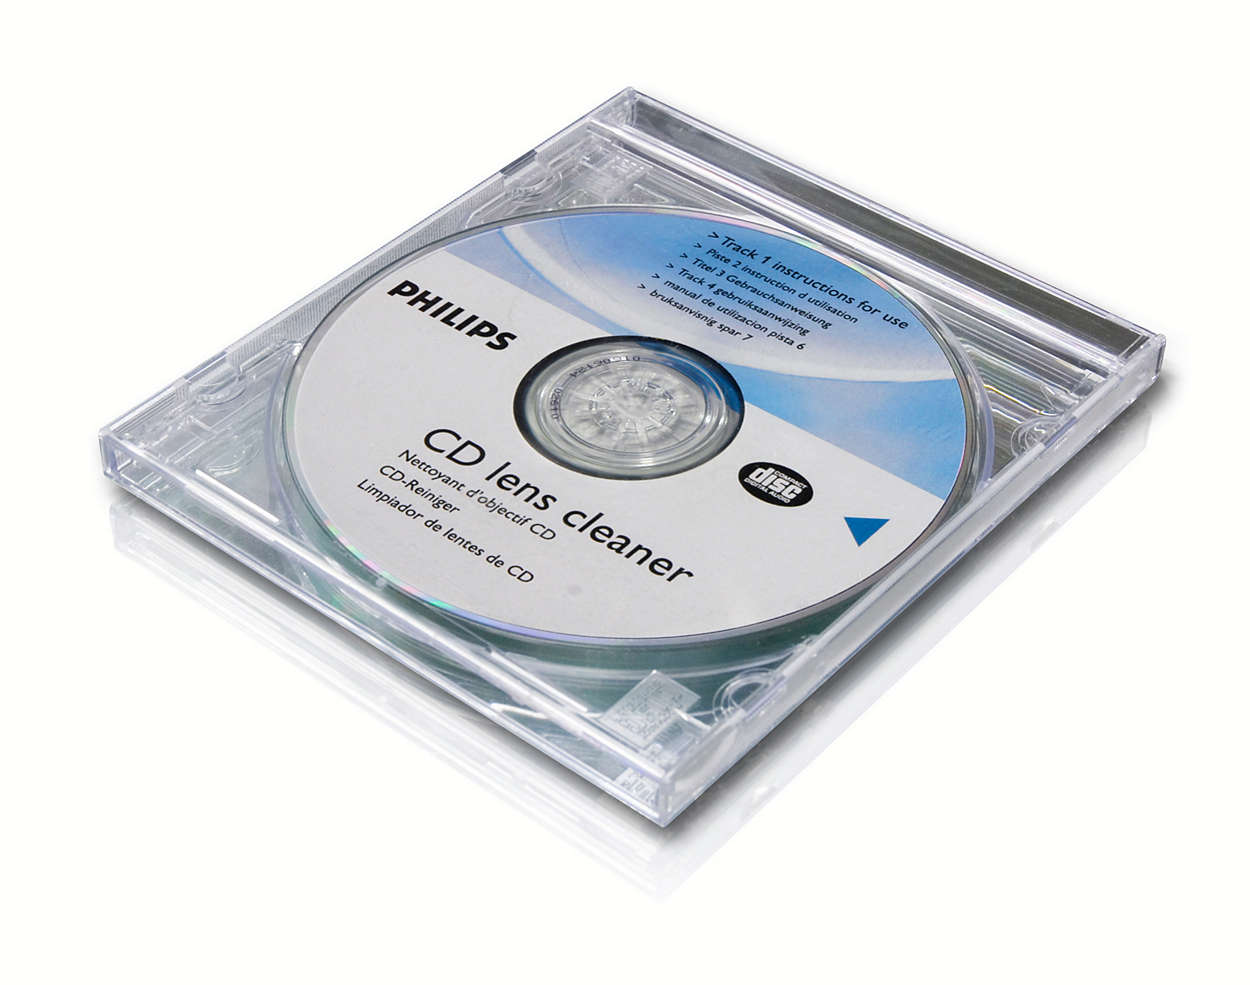 Reshow Disque de Nettoyage pour Lecteur de CD - Ensemble de Nettoyage pour  Lecteur de CD/VCD/DVD, Comprenant Un Chiffon en Microfibre, Un Disque de  Nettoyage et Une Solution de Nettoyage : 